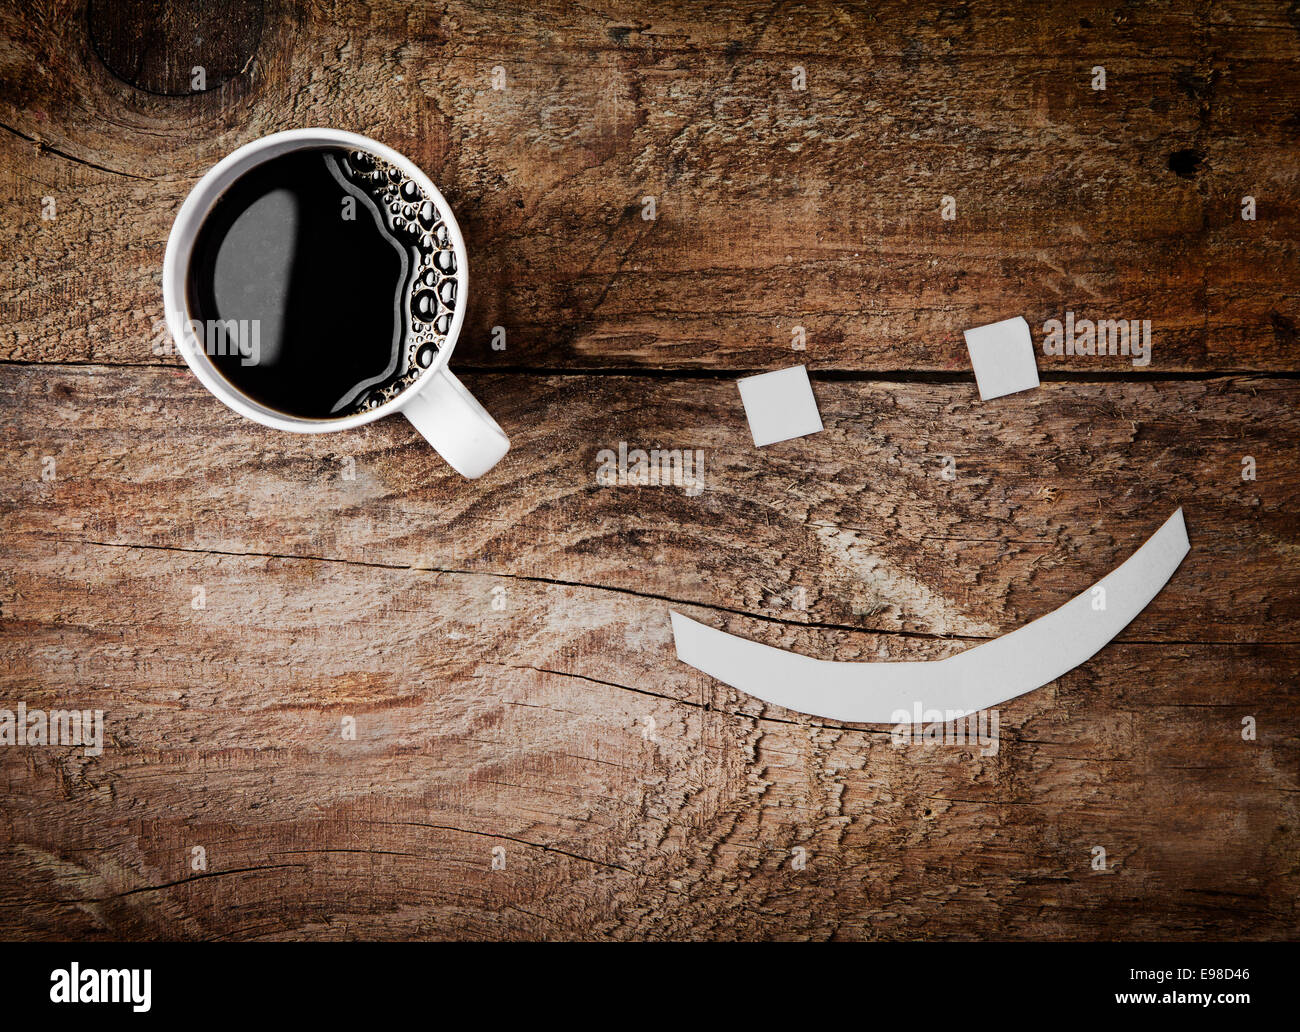 Vista aérea de una taza caliente de café espresso negro fuerte con una cara sonriente con ojos de cubos de azúcar sobre un fondo de madera con textura rugosa Foto de stock